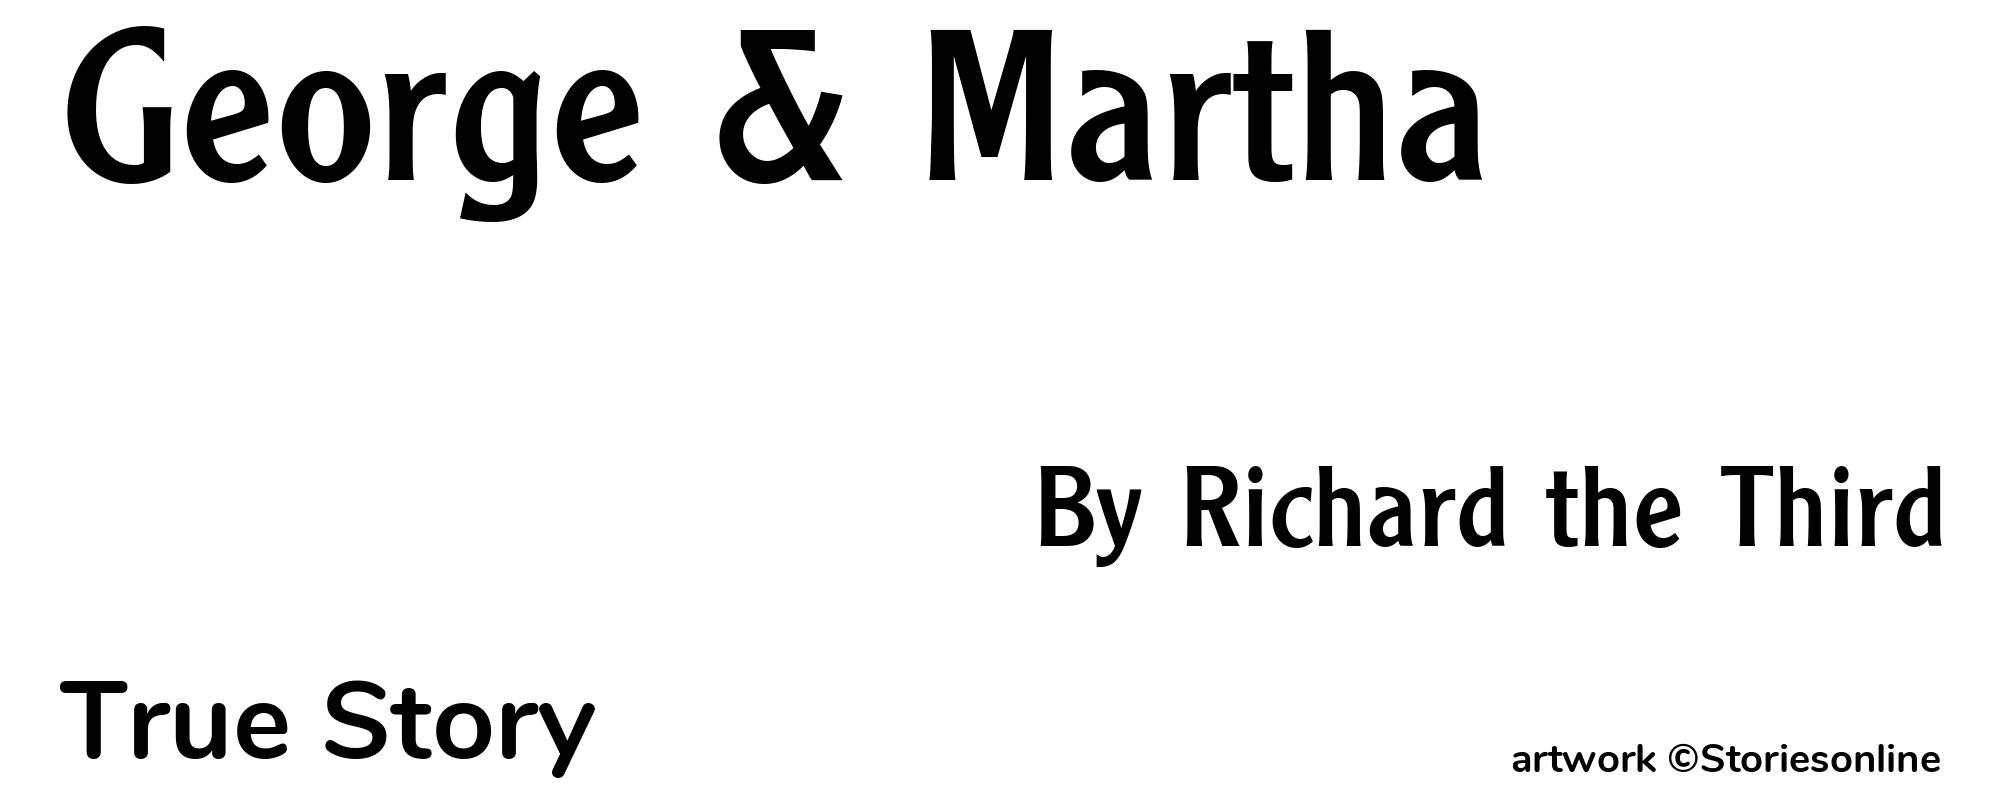 George & Martha - Cover